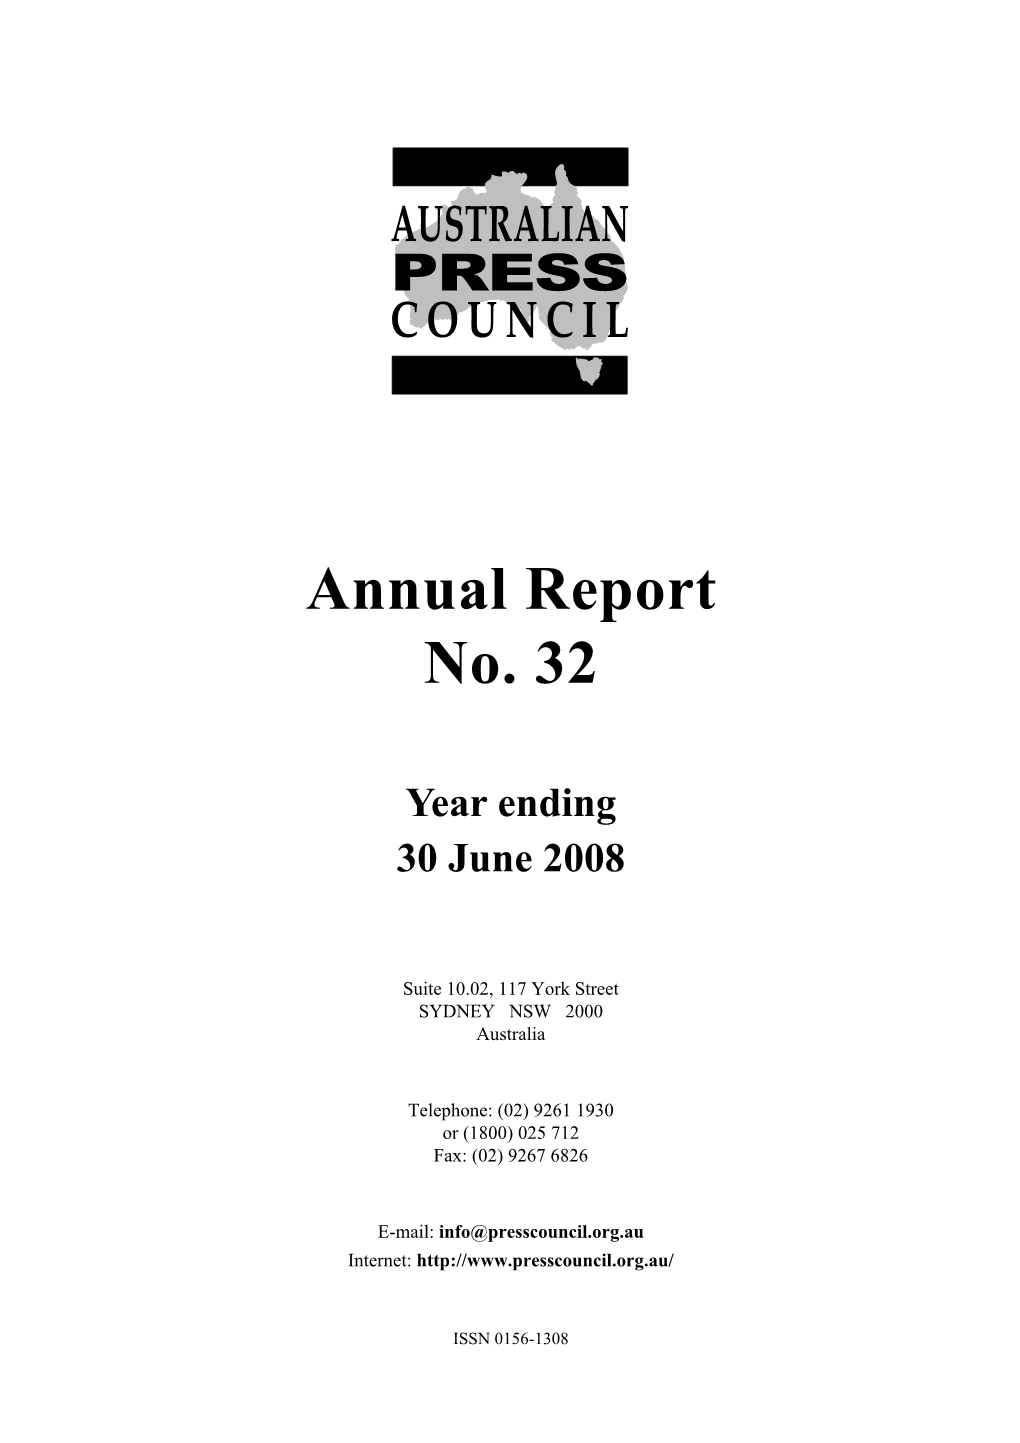 Annual Report No. 32